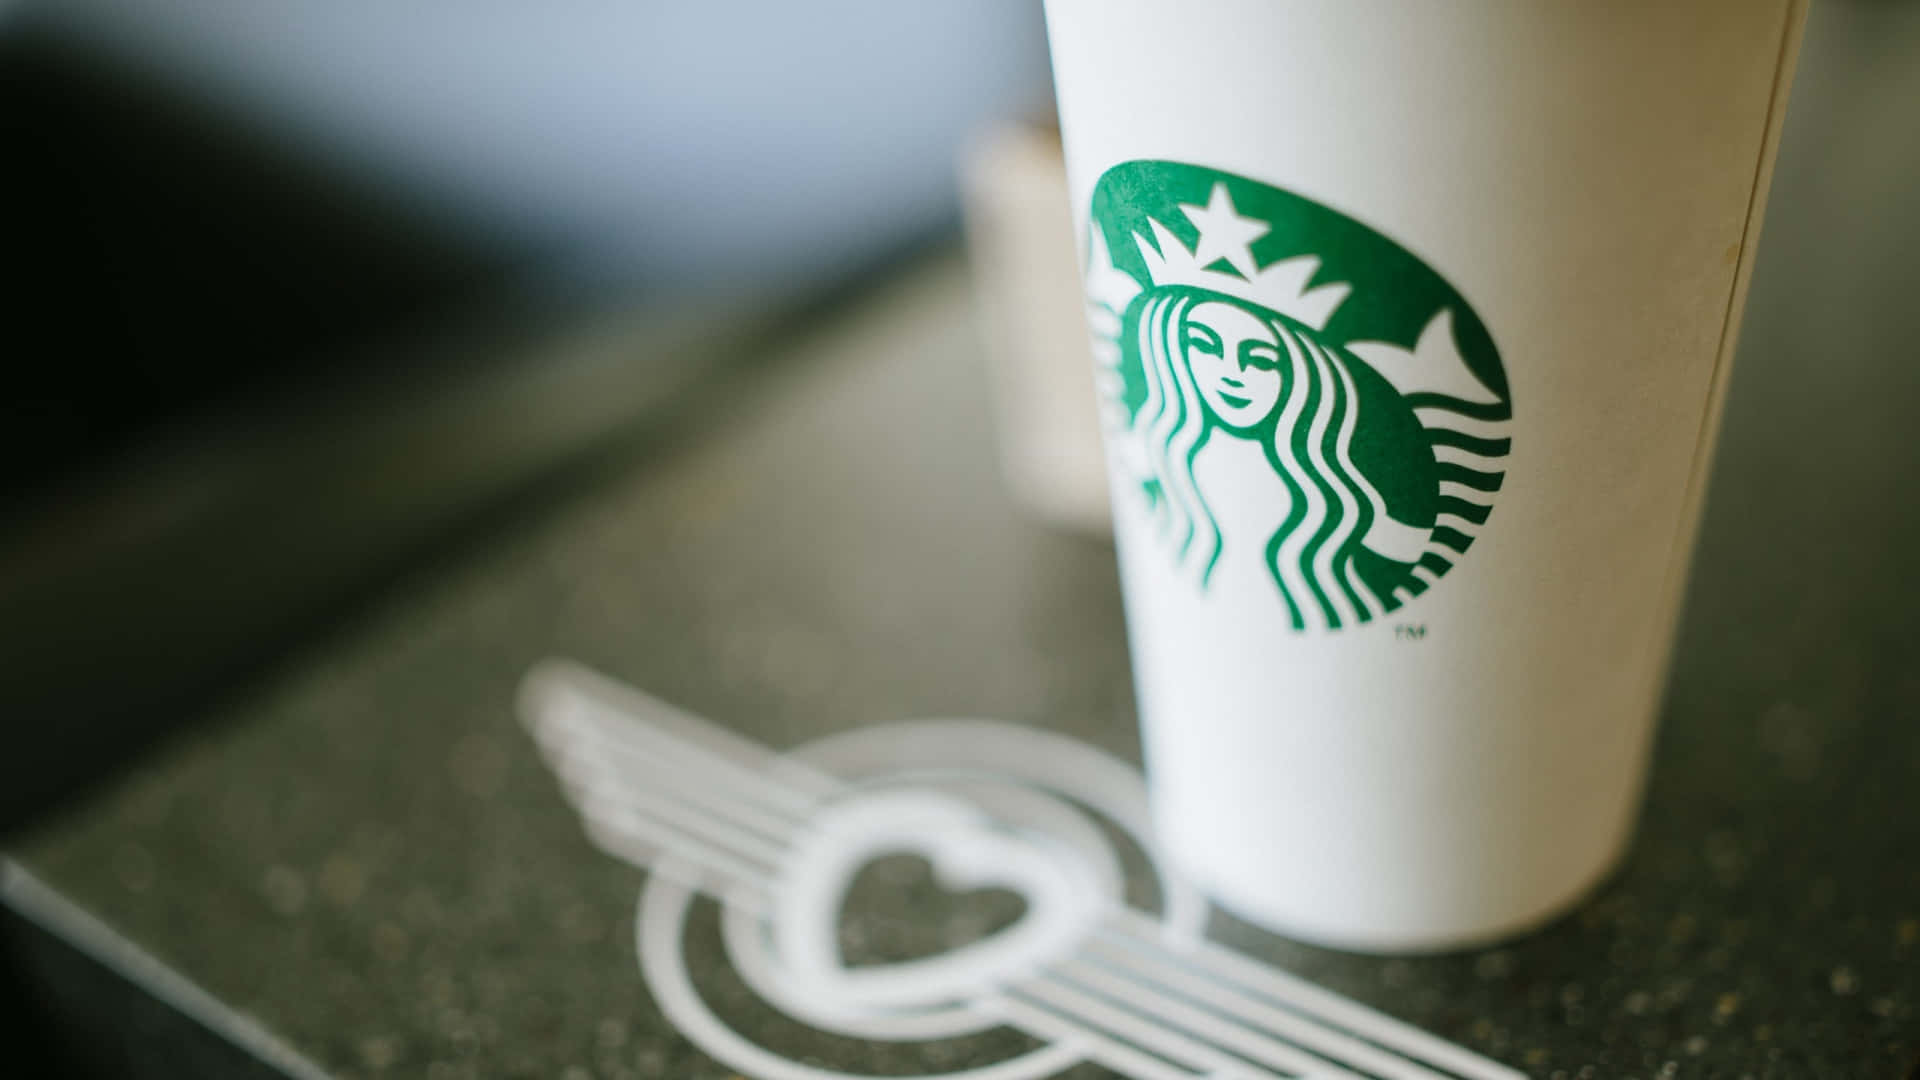 Starbuckskaffekop Med Logoen På Toppen.